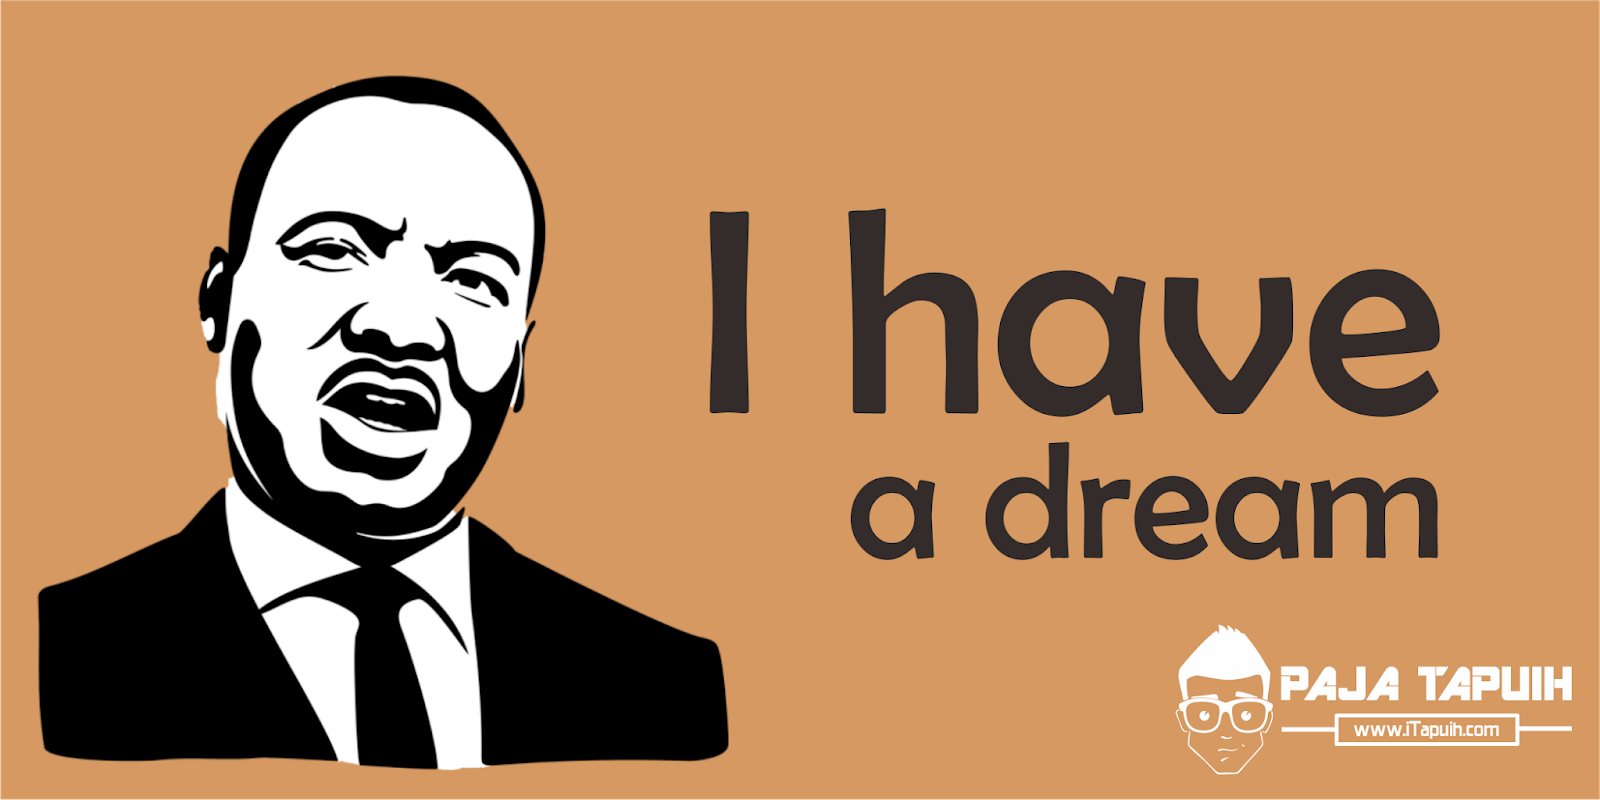 Contoh Pidato Bahasa Inggris Martin Luther King Jr: I have a dream dan Terjemahannya